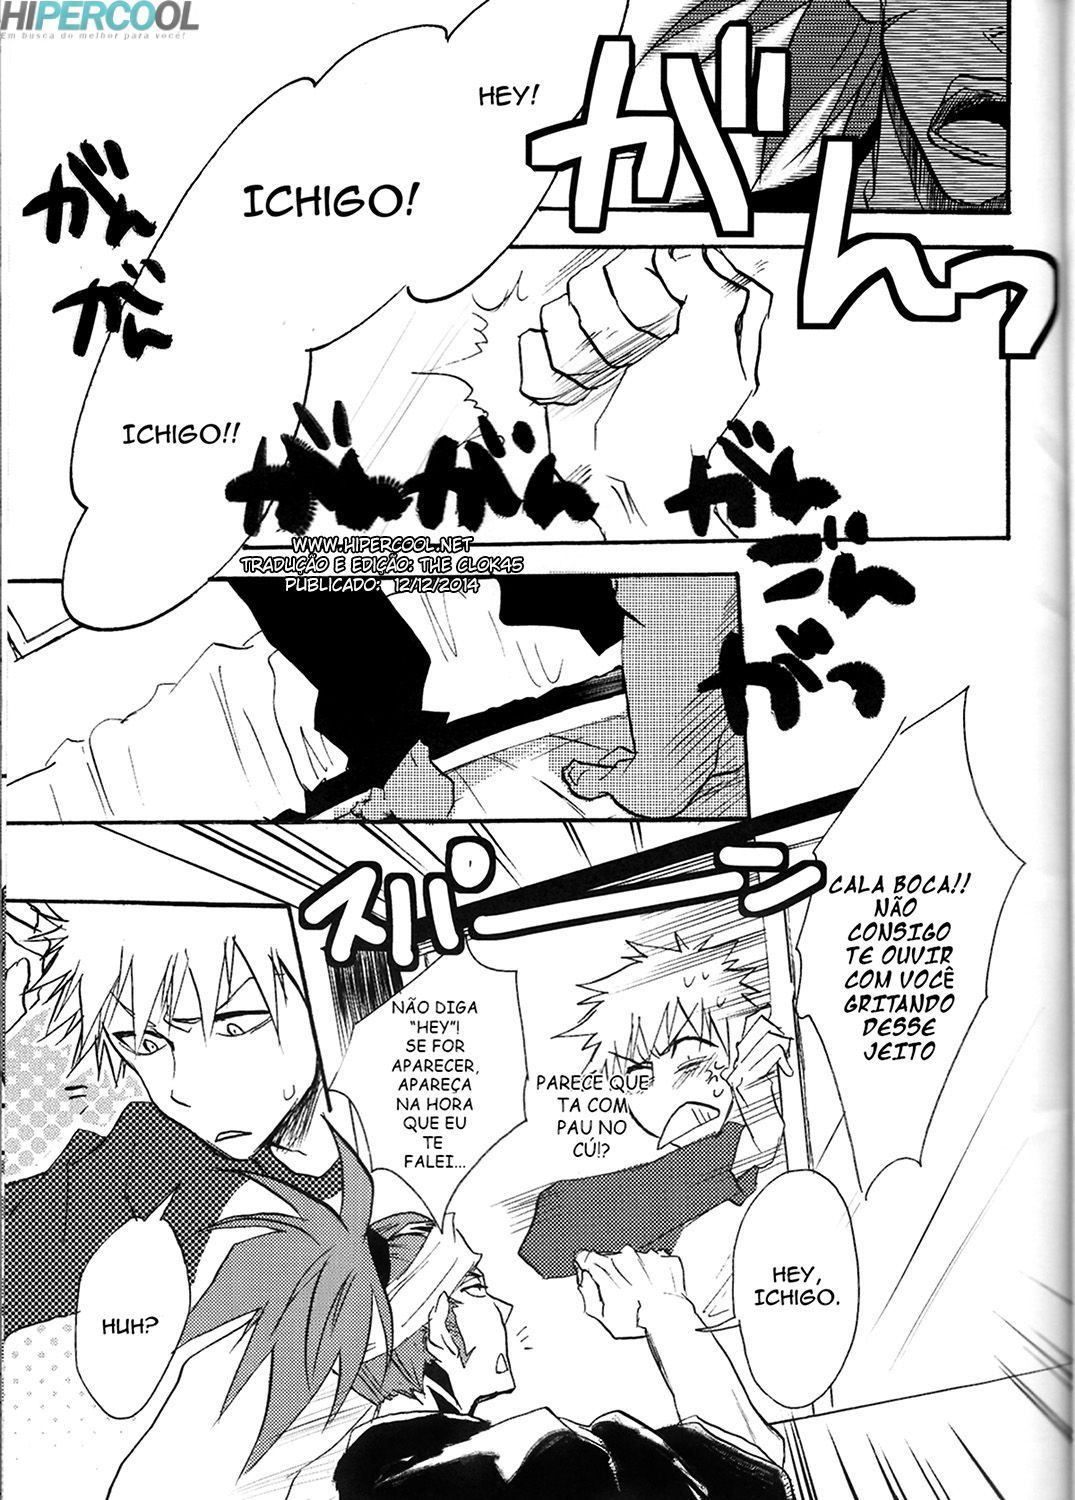 Treinamento pervertido com Ichigo (3)